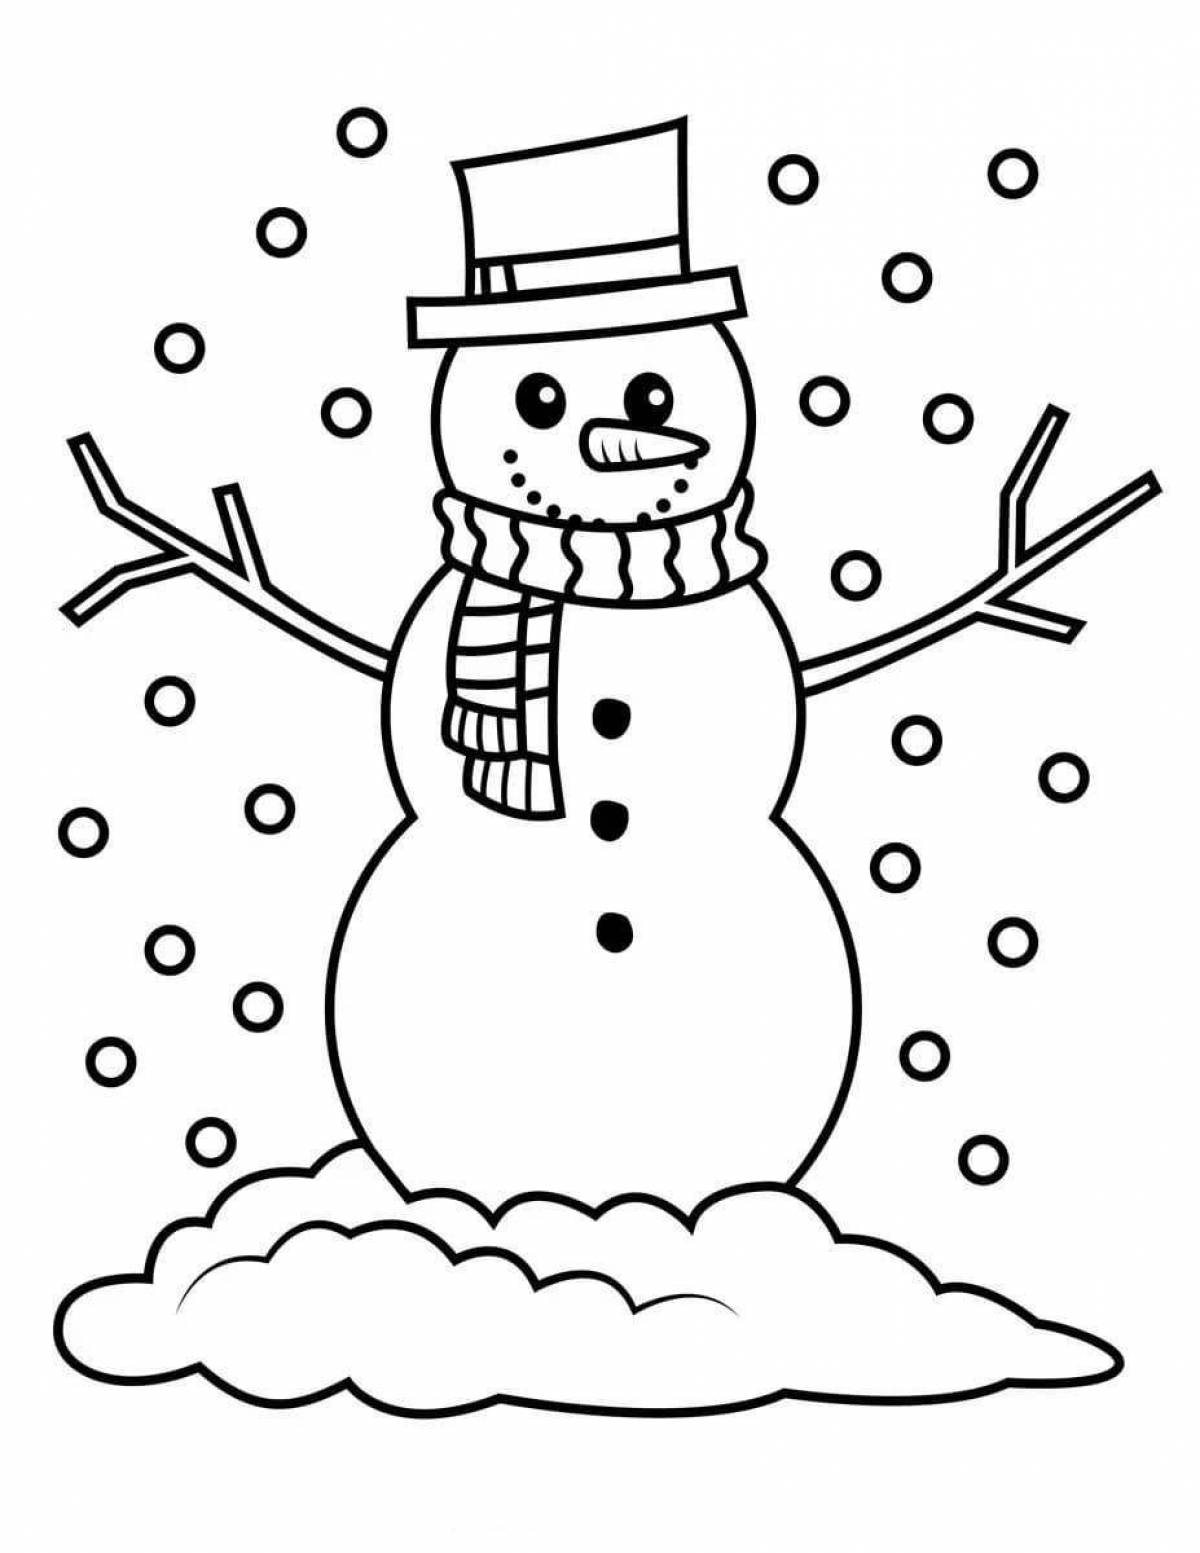 Увлекательная раскраска снеговик для детей 4-5 лет